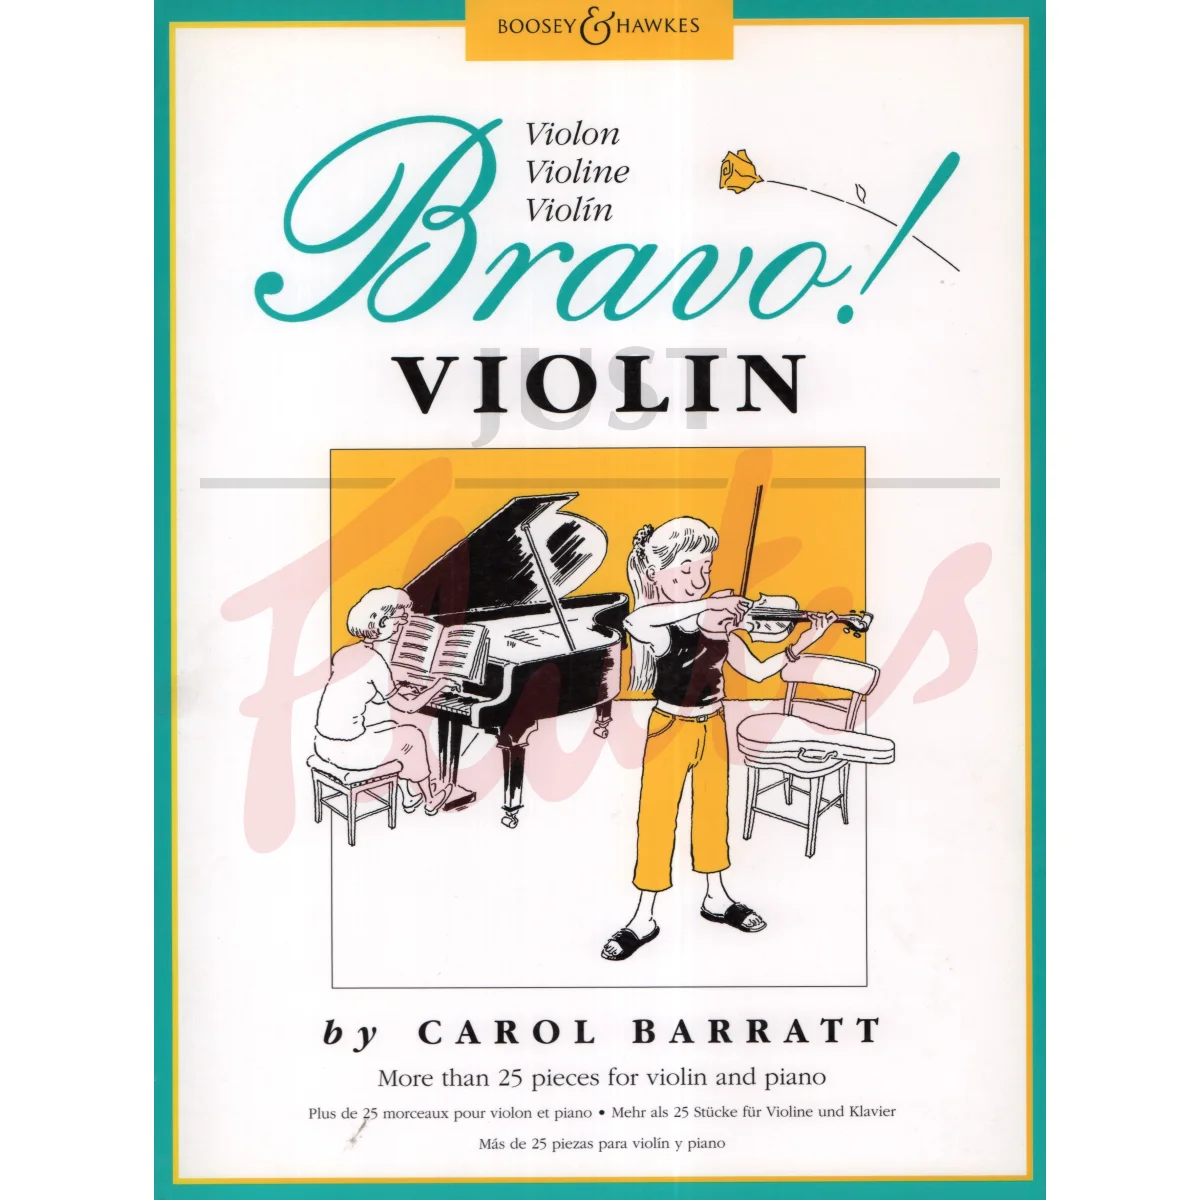 Bravo! Violin